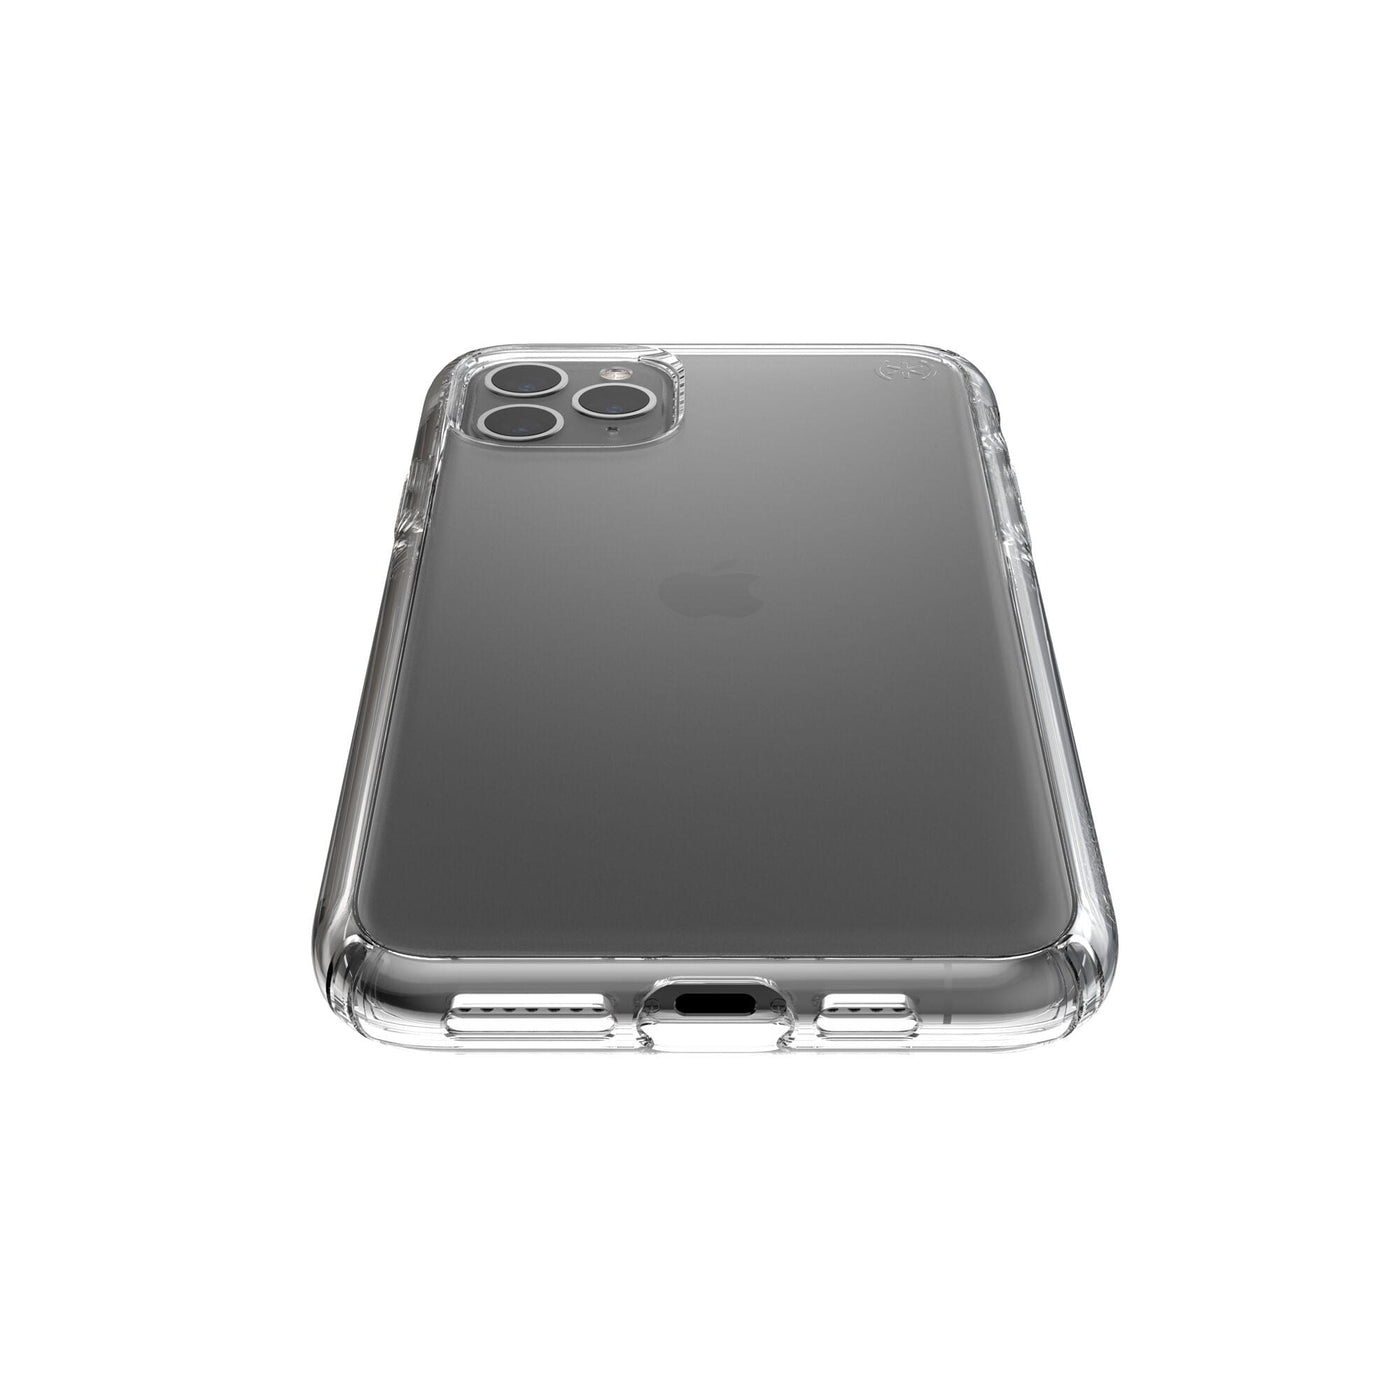 Speck Presidio Show iPhone 11 Pro Max Case, Clear/Black